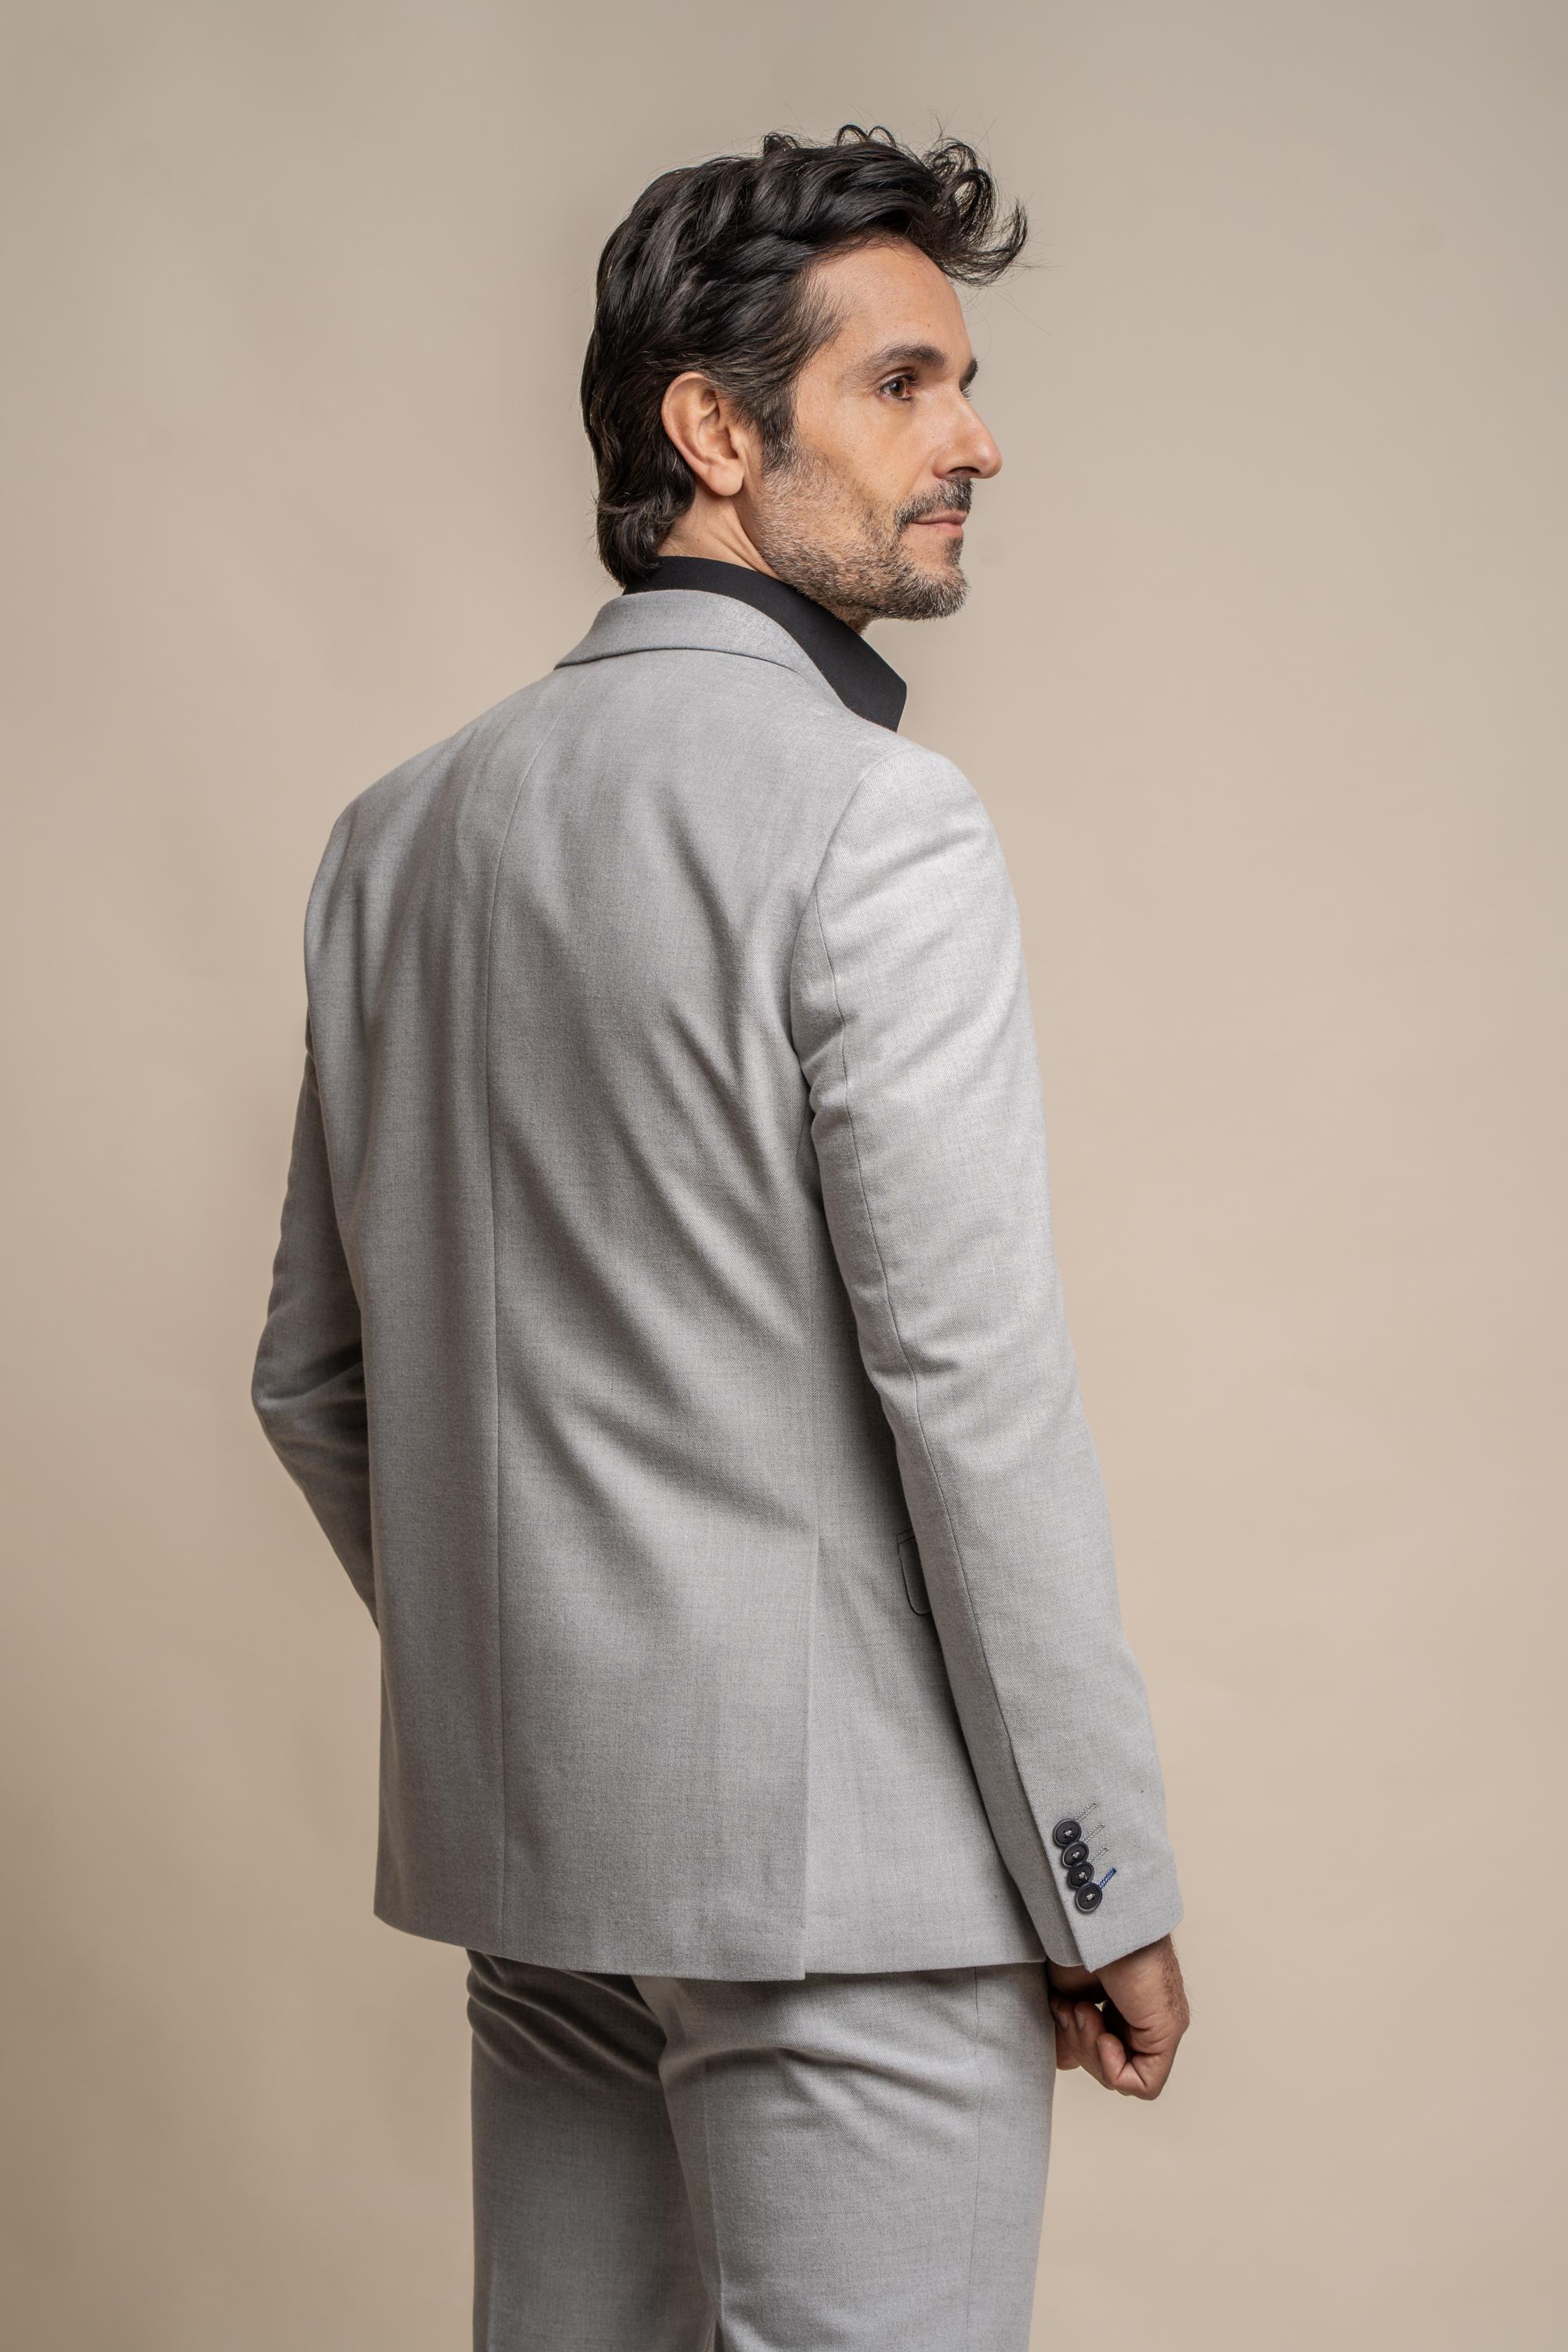   Men's Tweed Slim Fit Formal Suit Jacket - FURIOUS Ivory